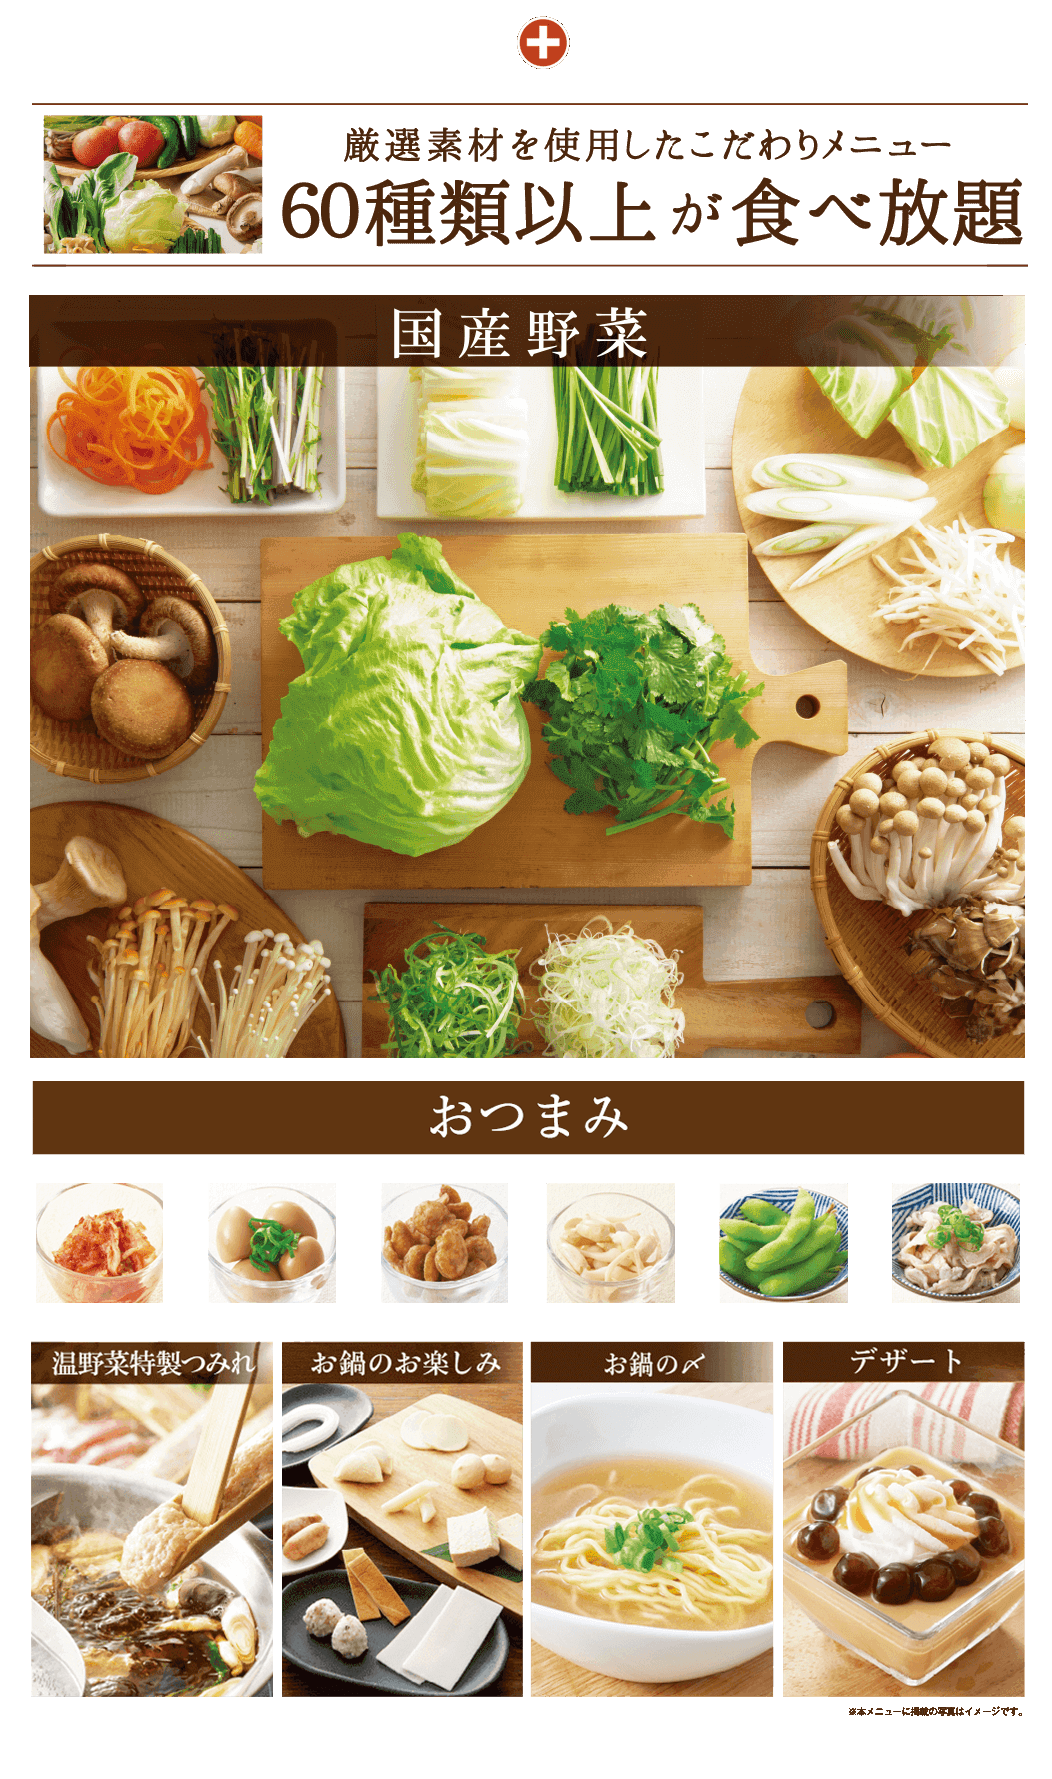 しゃぶしゃぶ 寿司 食べ飲み放題 宴会コースのご案内 しゃぶしゃぶ温野菜